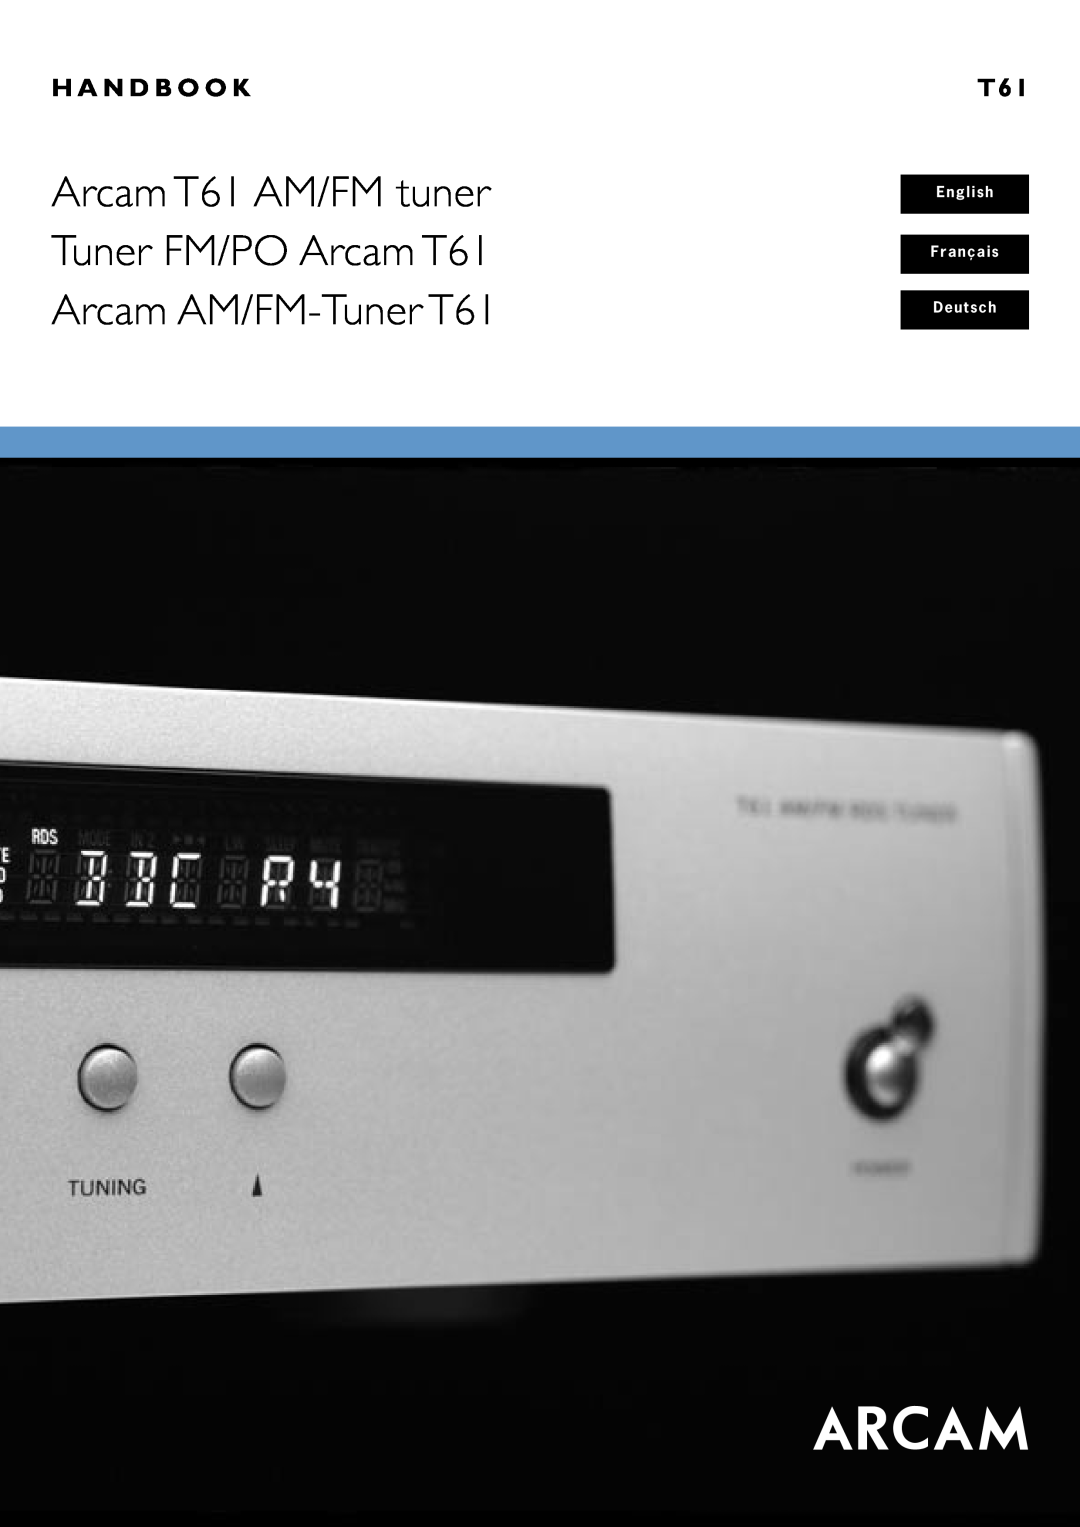 Arcam AM/FM Tuner T61 manual English Français Deutsch, H A N D B O O K 